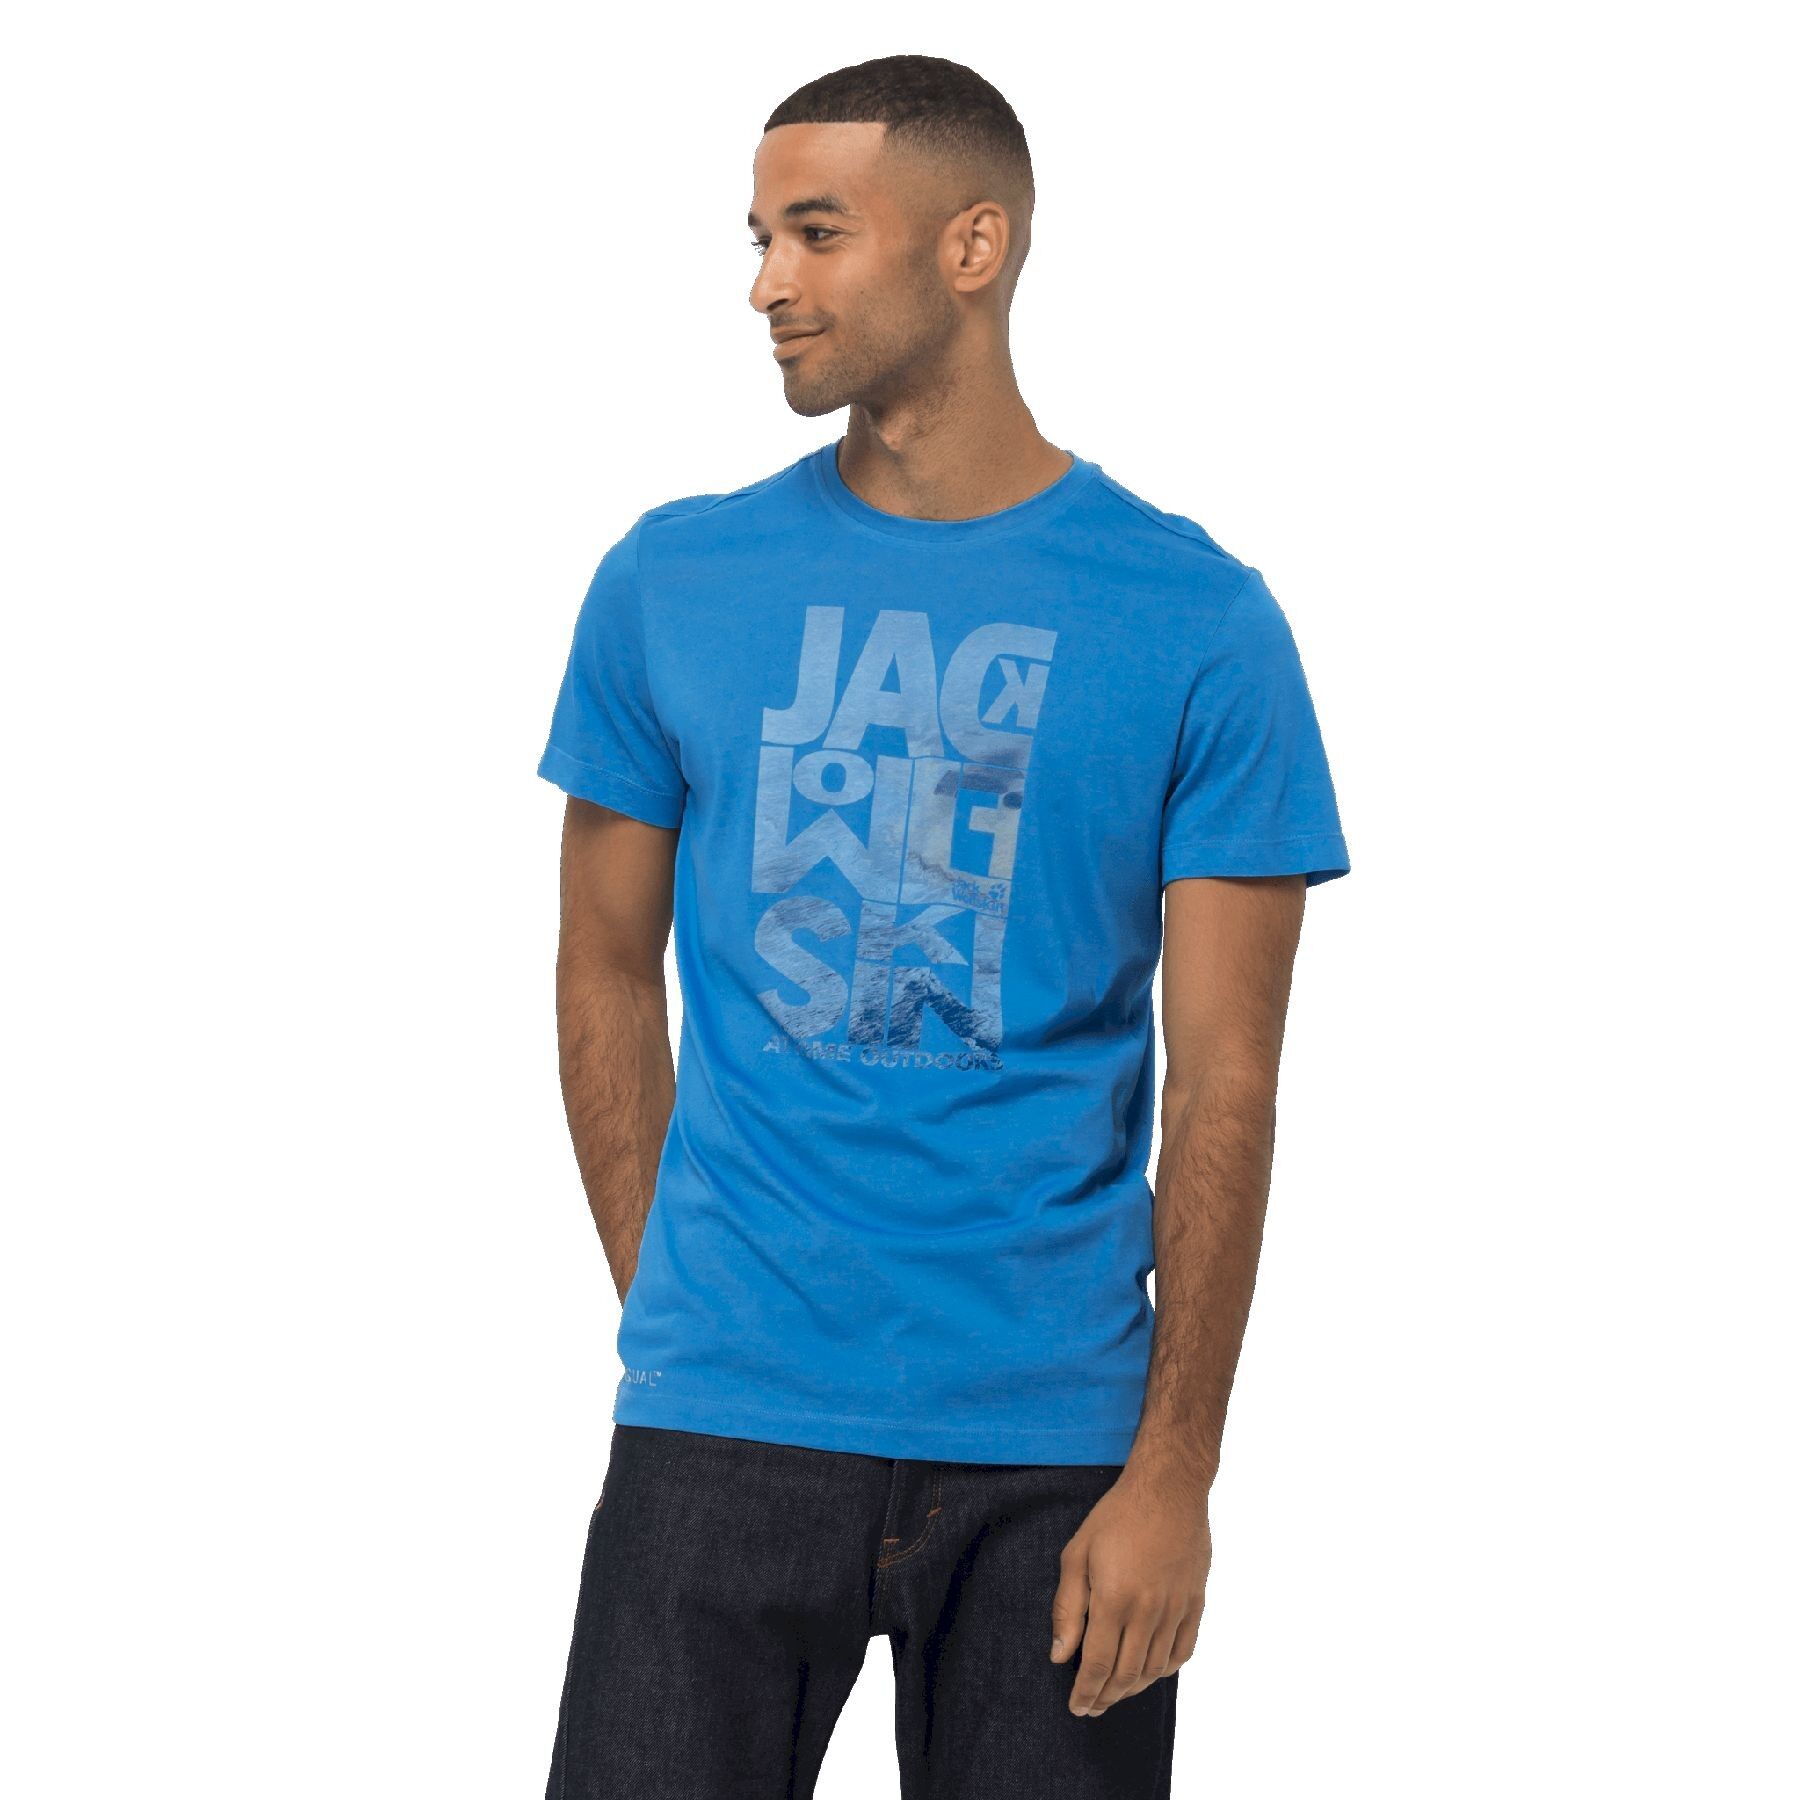 Jack Wolfskin Atlantic Ocean T - T-shirt Herr